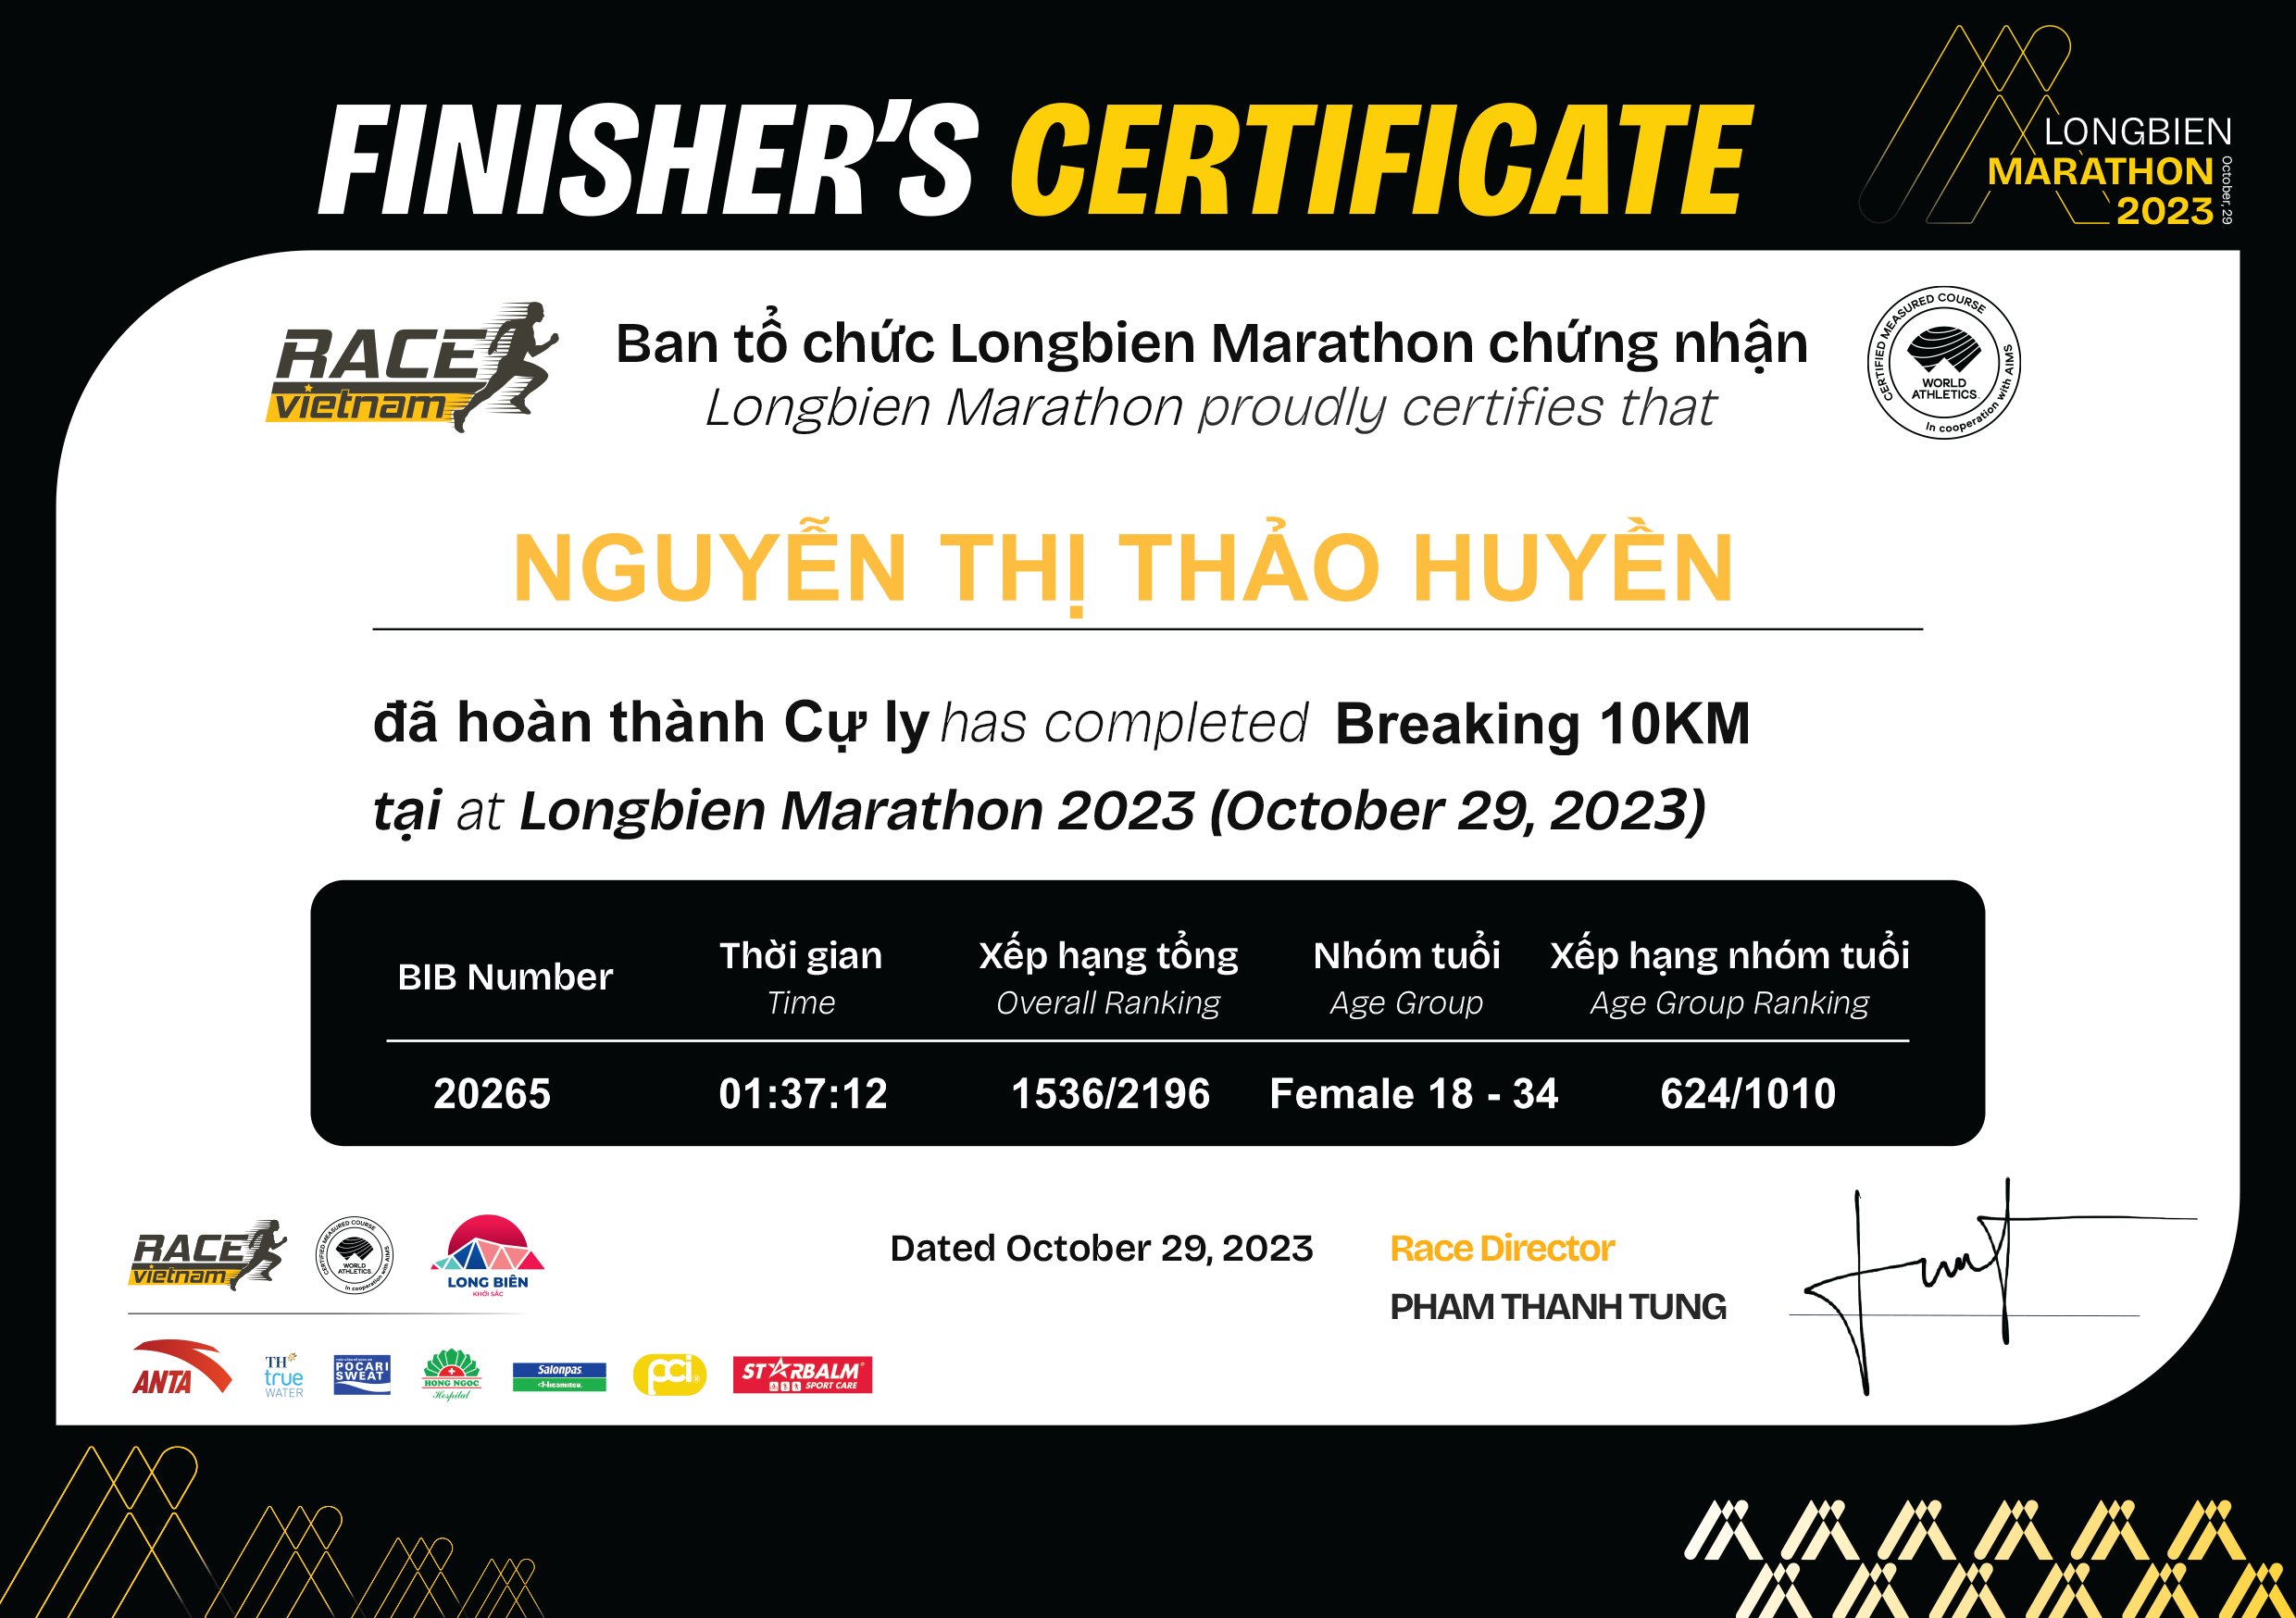 20265 - Nguyễn Thị Thảo Huyền